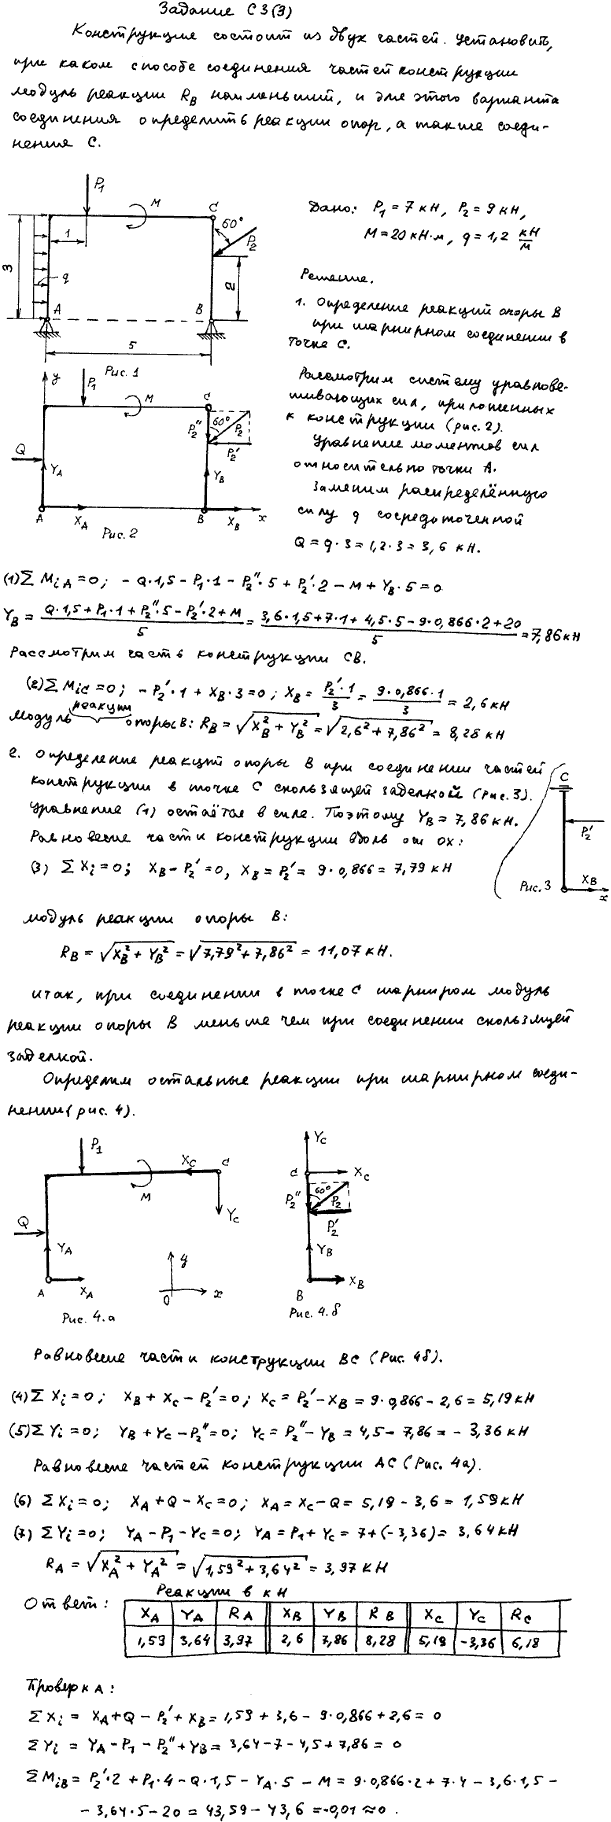 Задание C3 вариант 3. P1=7 кН; P2=9 кН; M=20 кН*м; q=1,2 кН/м; исследуемая реакция RB; вид скользящей заделки